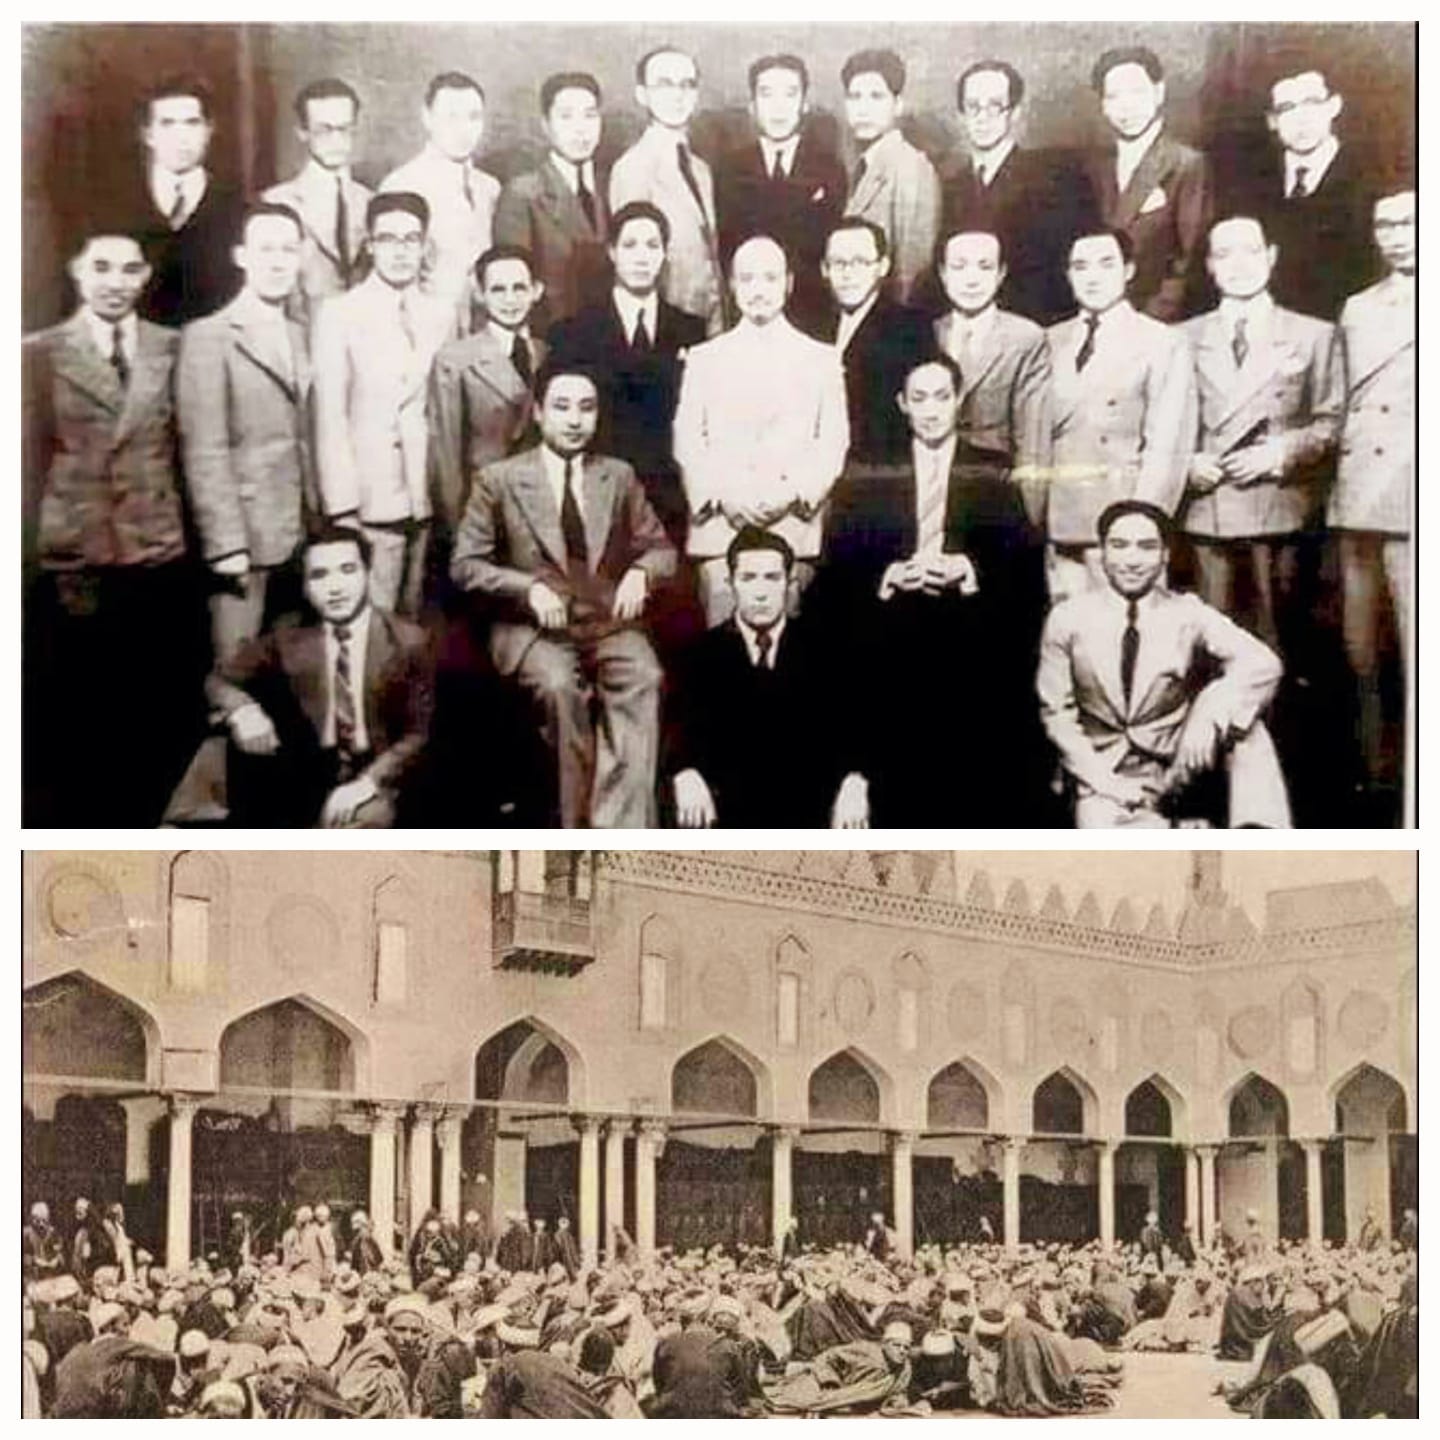 الصورة للجامع الأزهر مطلع القرن العشرين ولطلاب البعثات الصينية الست في الأزهر عام 1938م